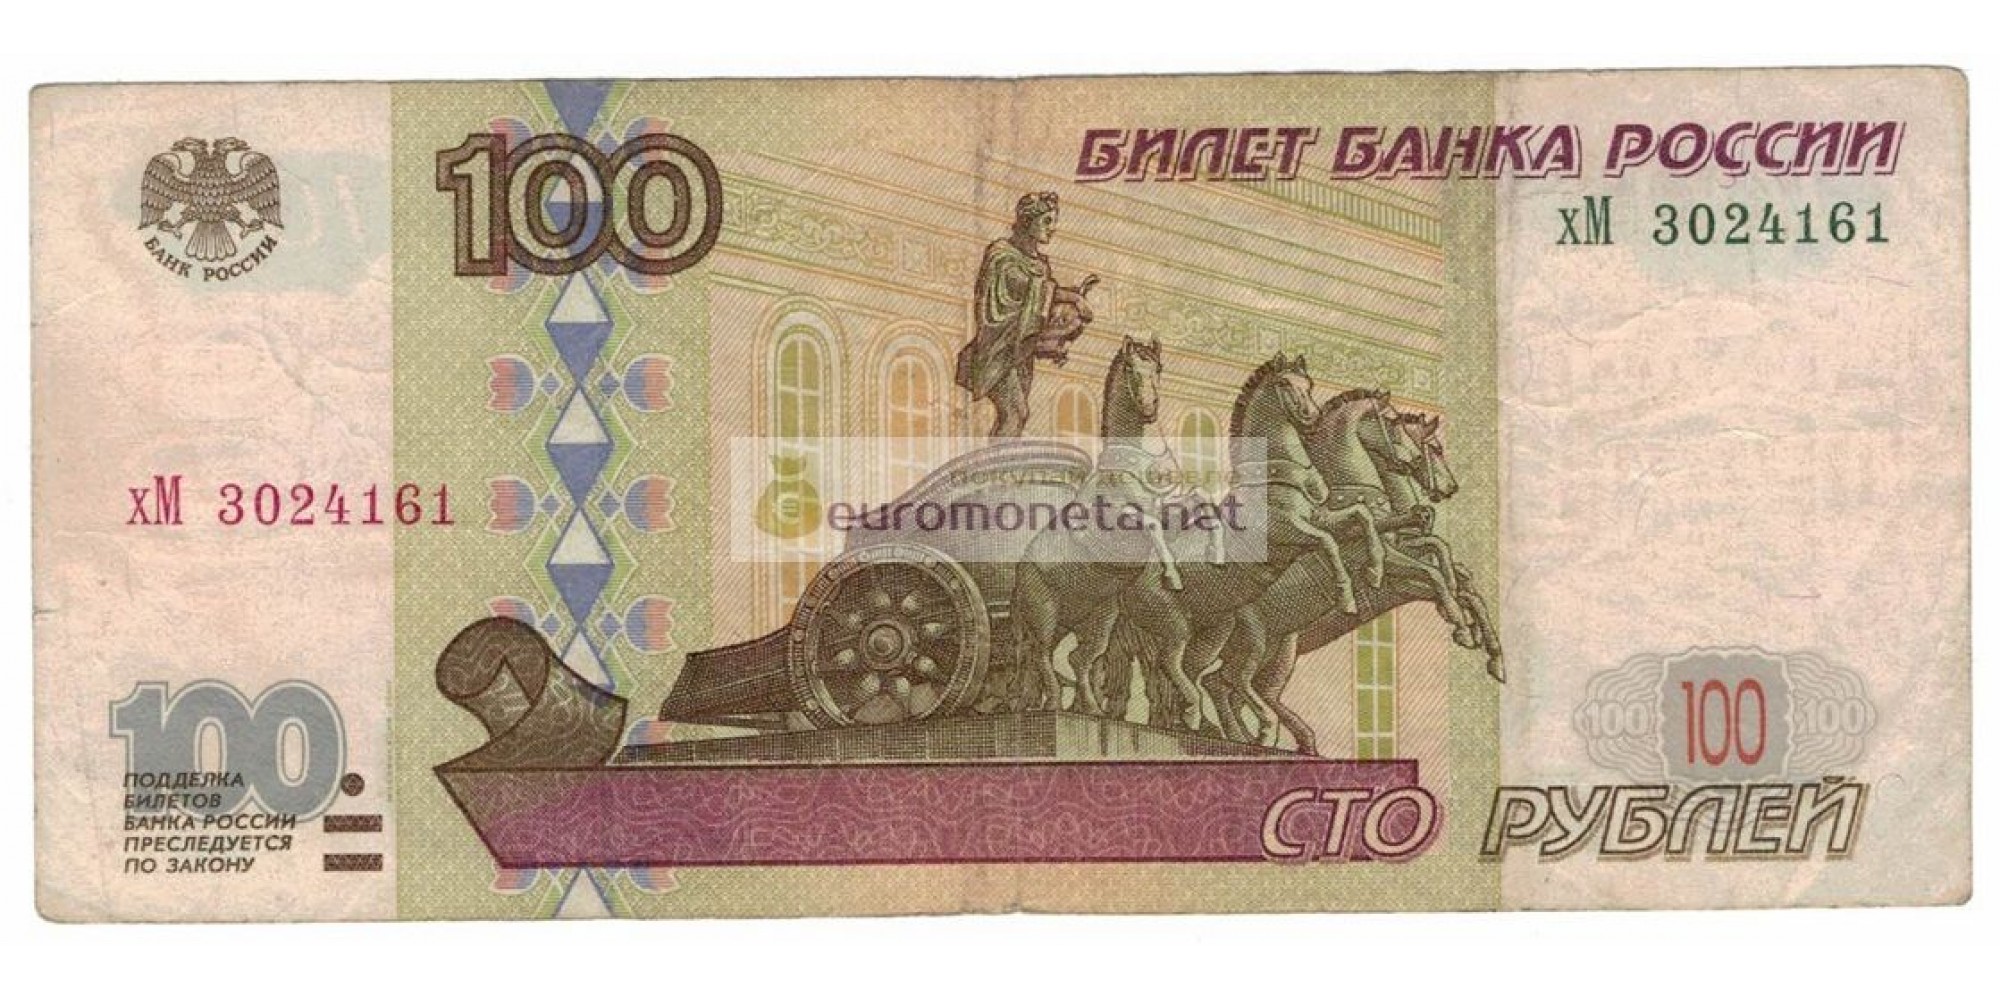 Россия 100 рублей 1997 год модификация 2001 год серия хМ 3024161